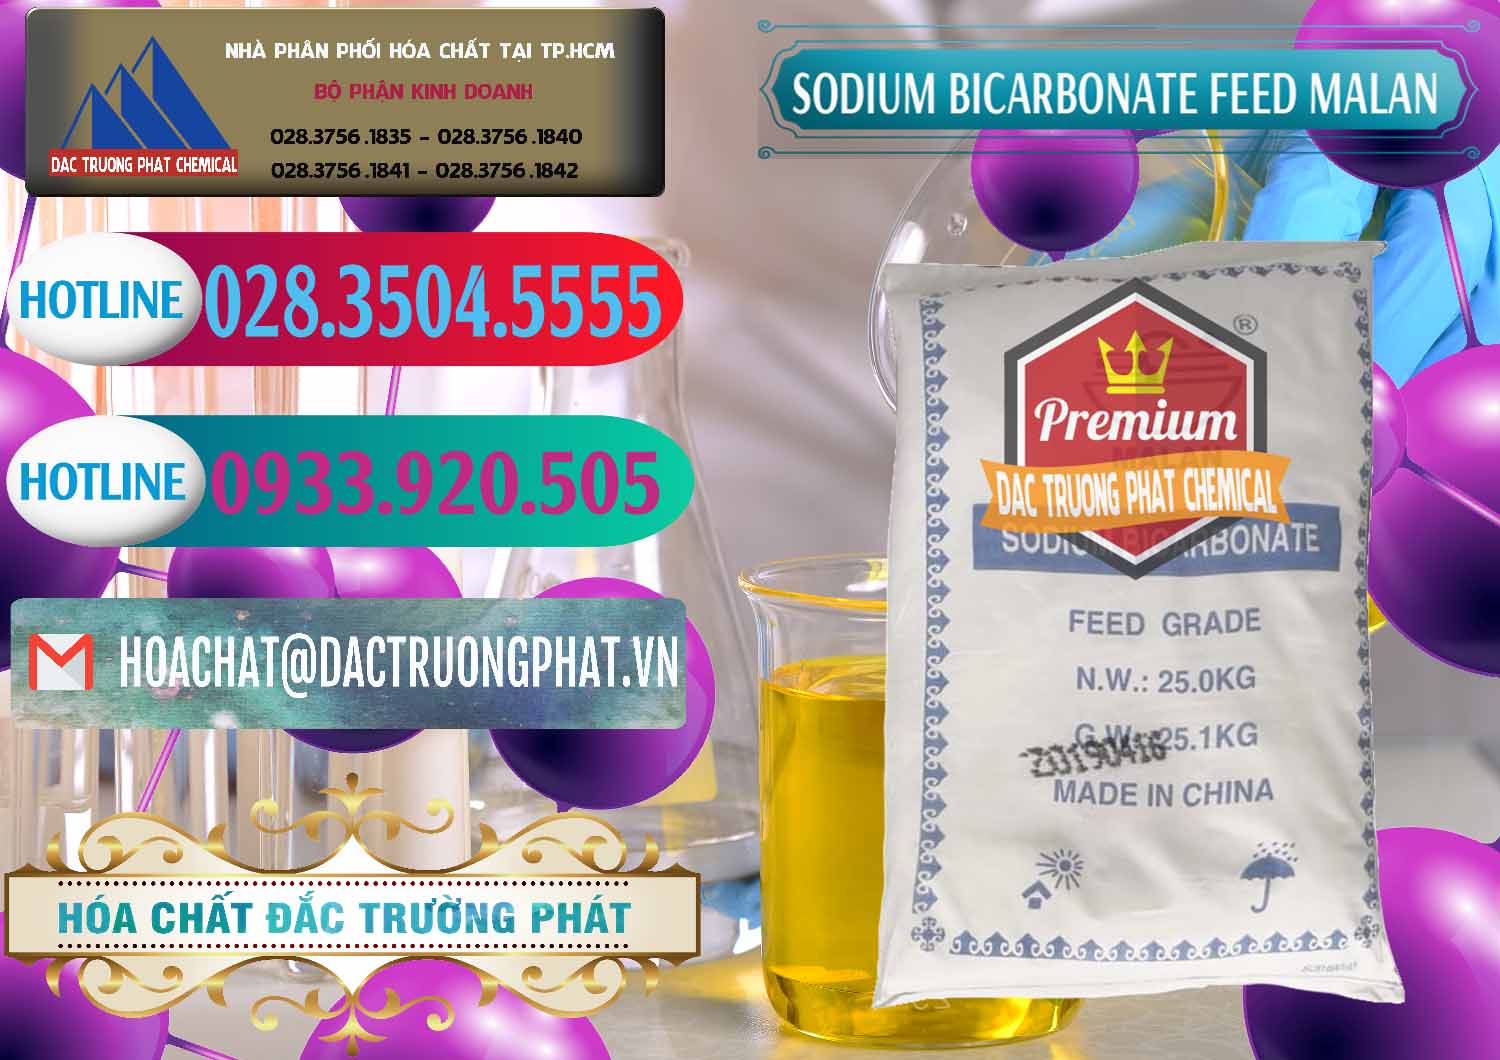 Phân phối & bán Sodium Bicarbonate – Bicar NaHCO3 Feed Grade Malan Trung Quốc China - 0262 - Đơn vị chuyên bán & cung cấp hóa chất tại TP.HCM - truongphat.vn